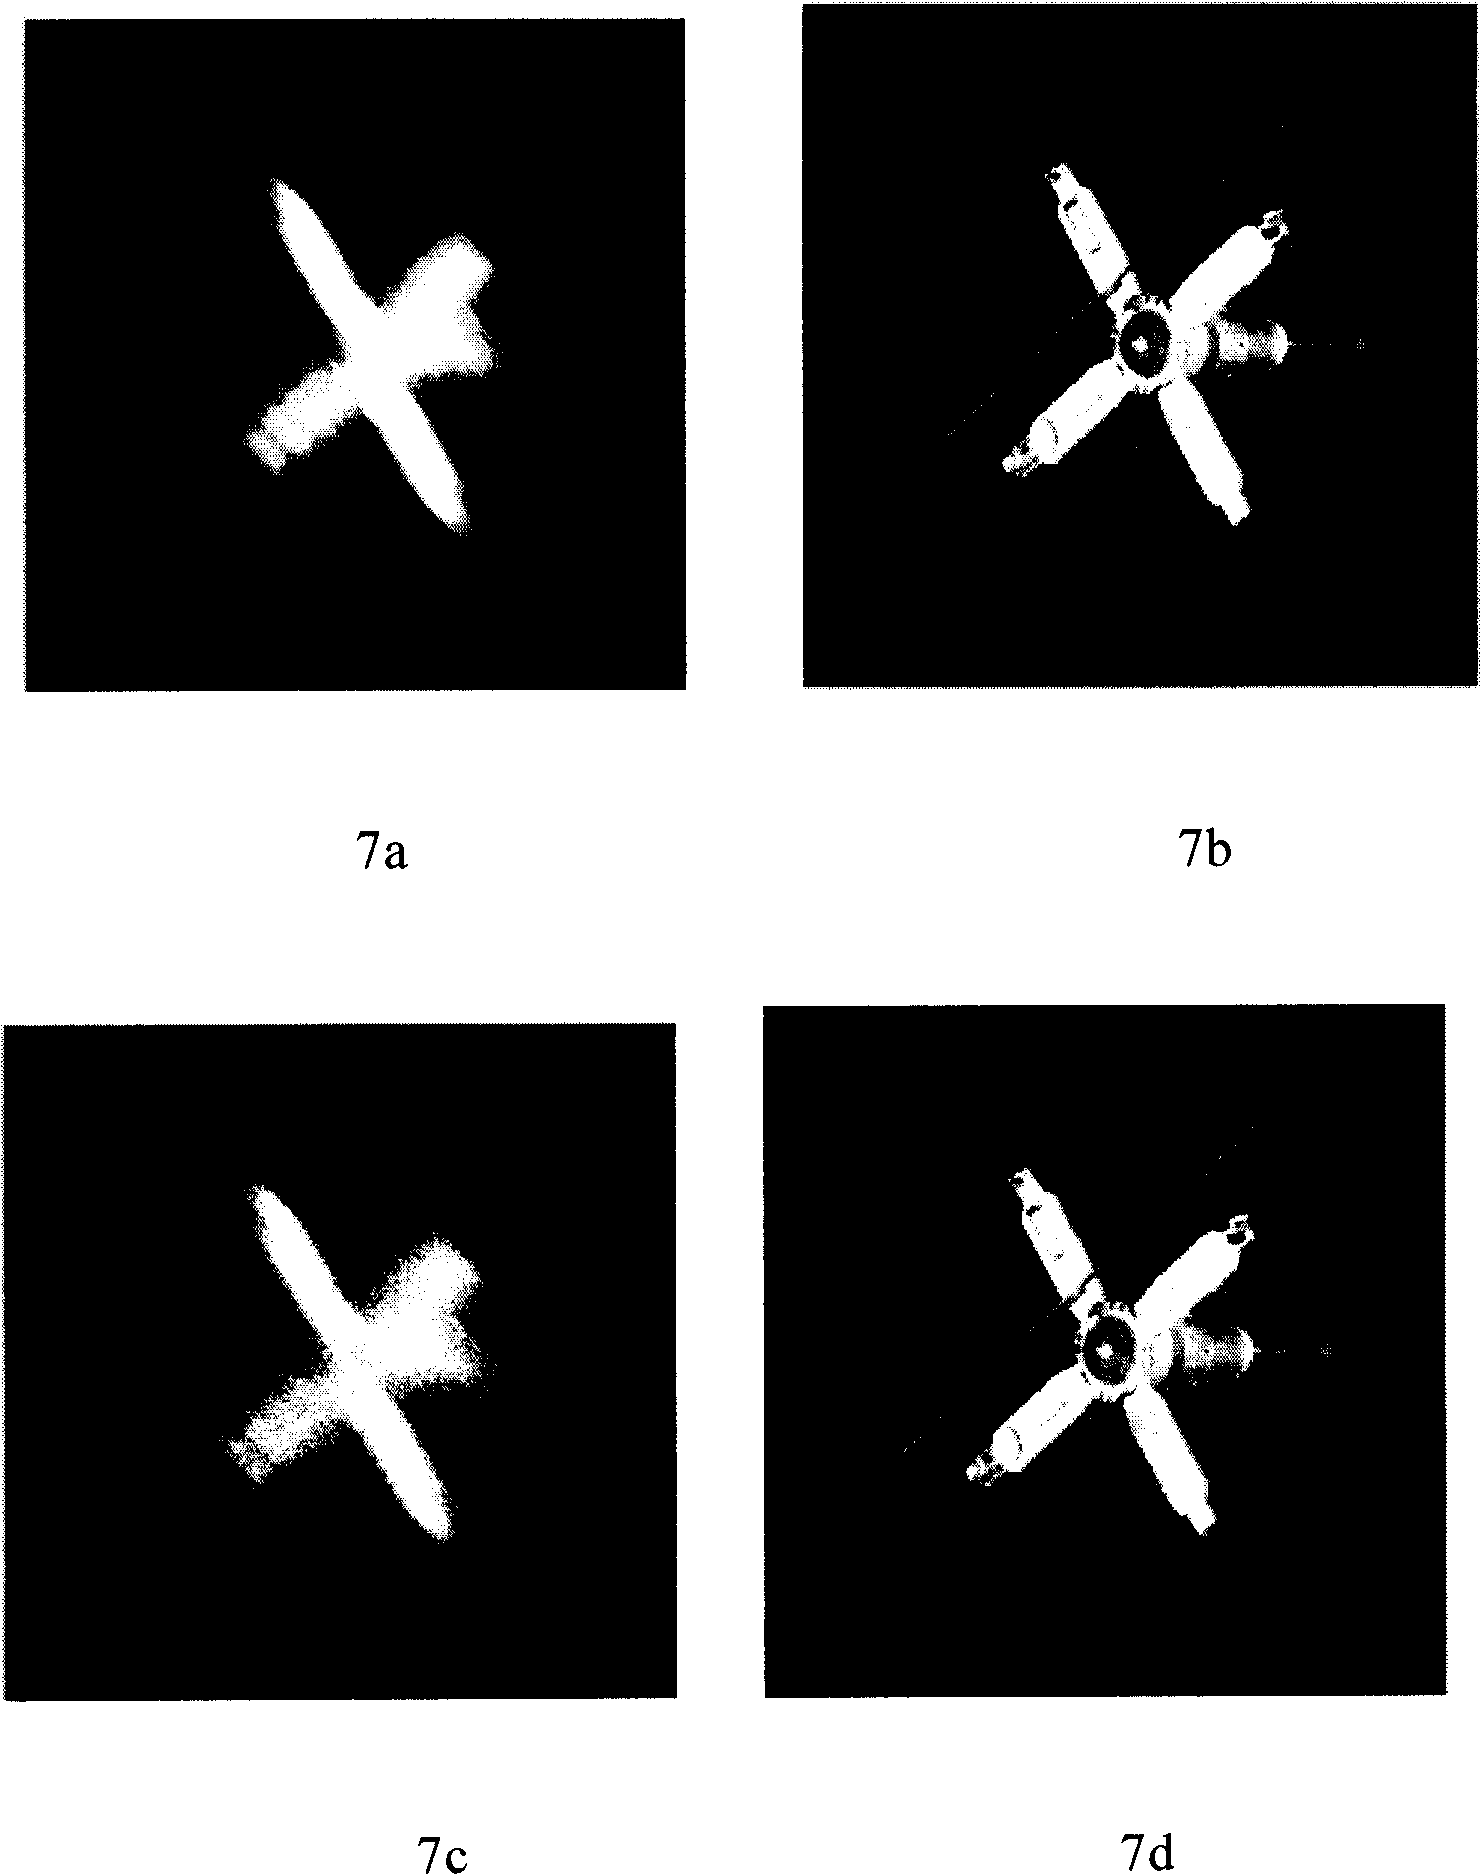 Blind restoration method for moving blurred image